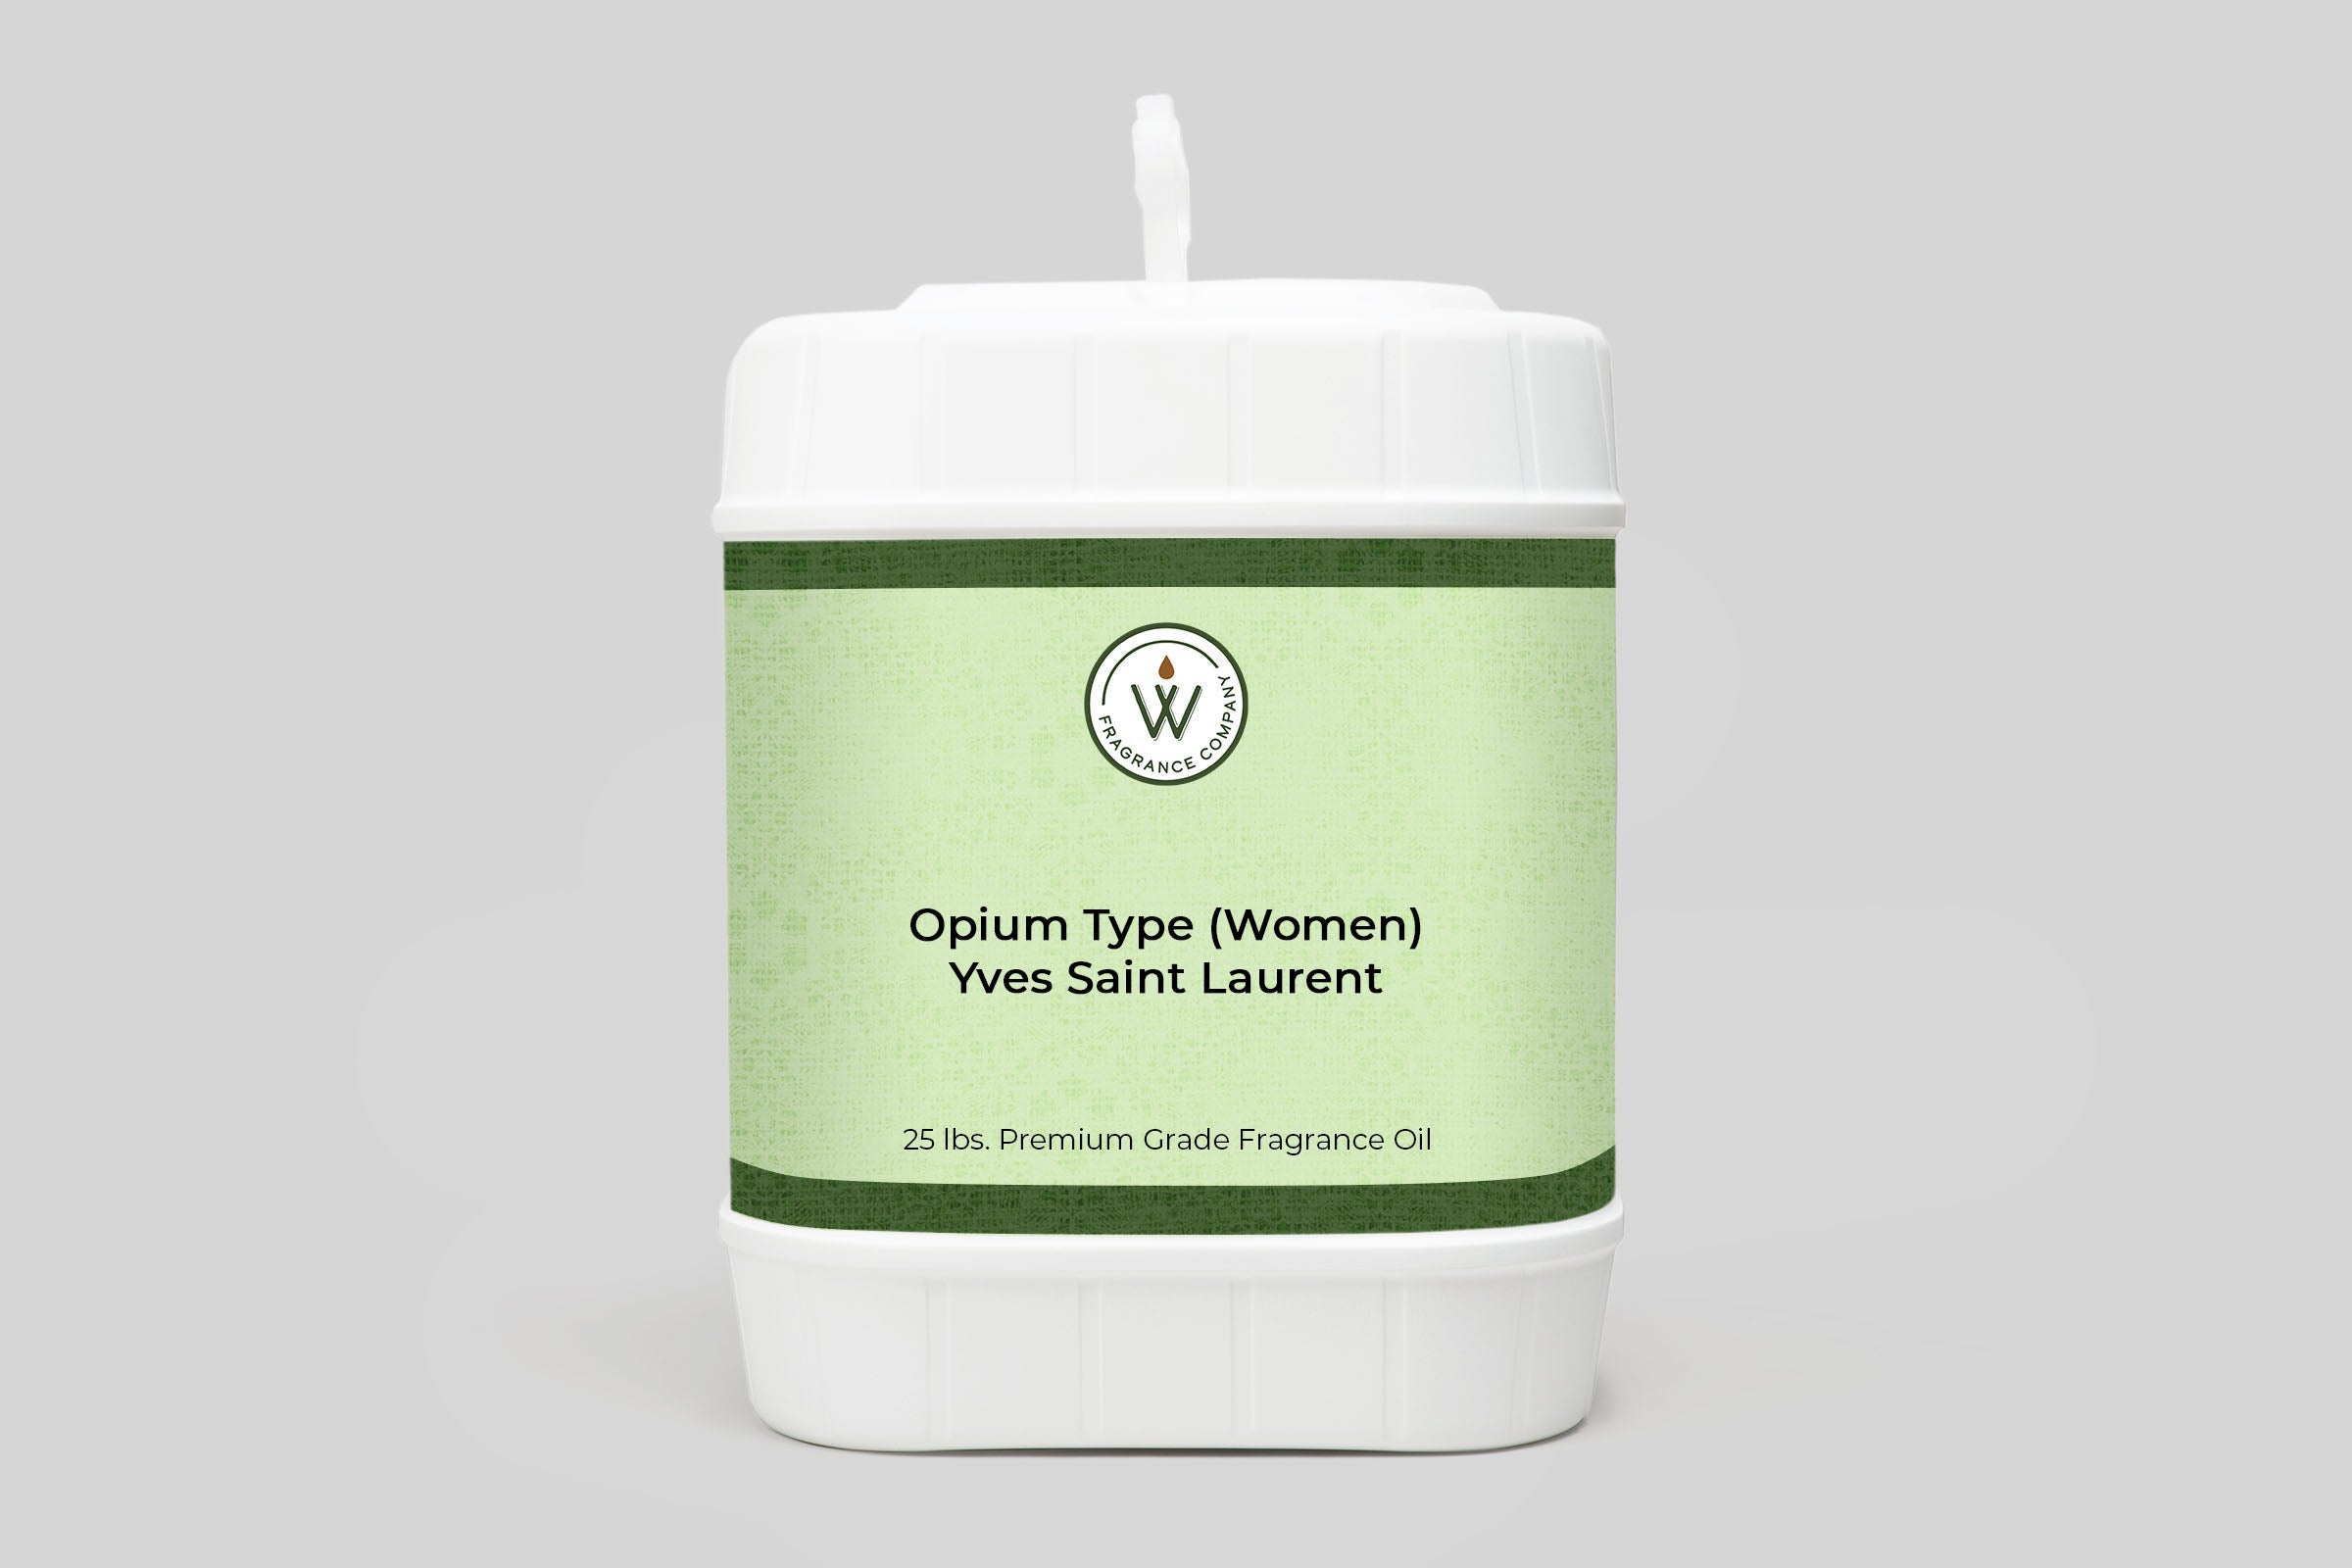 Opium Type (Women) Yves Saint Laurent Fragrance Oil